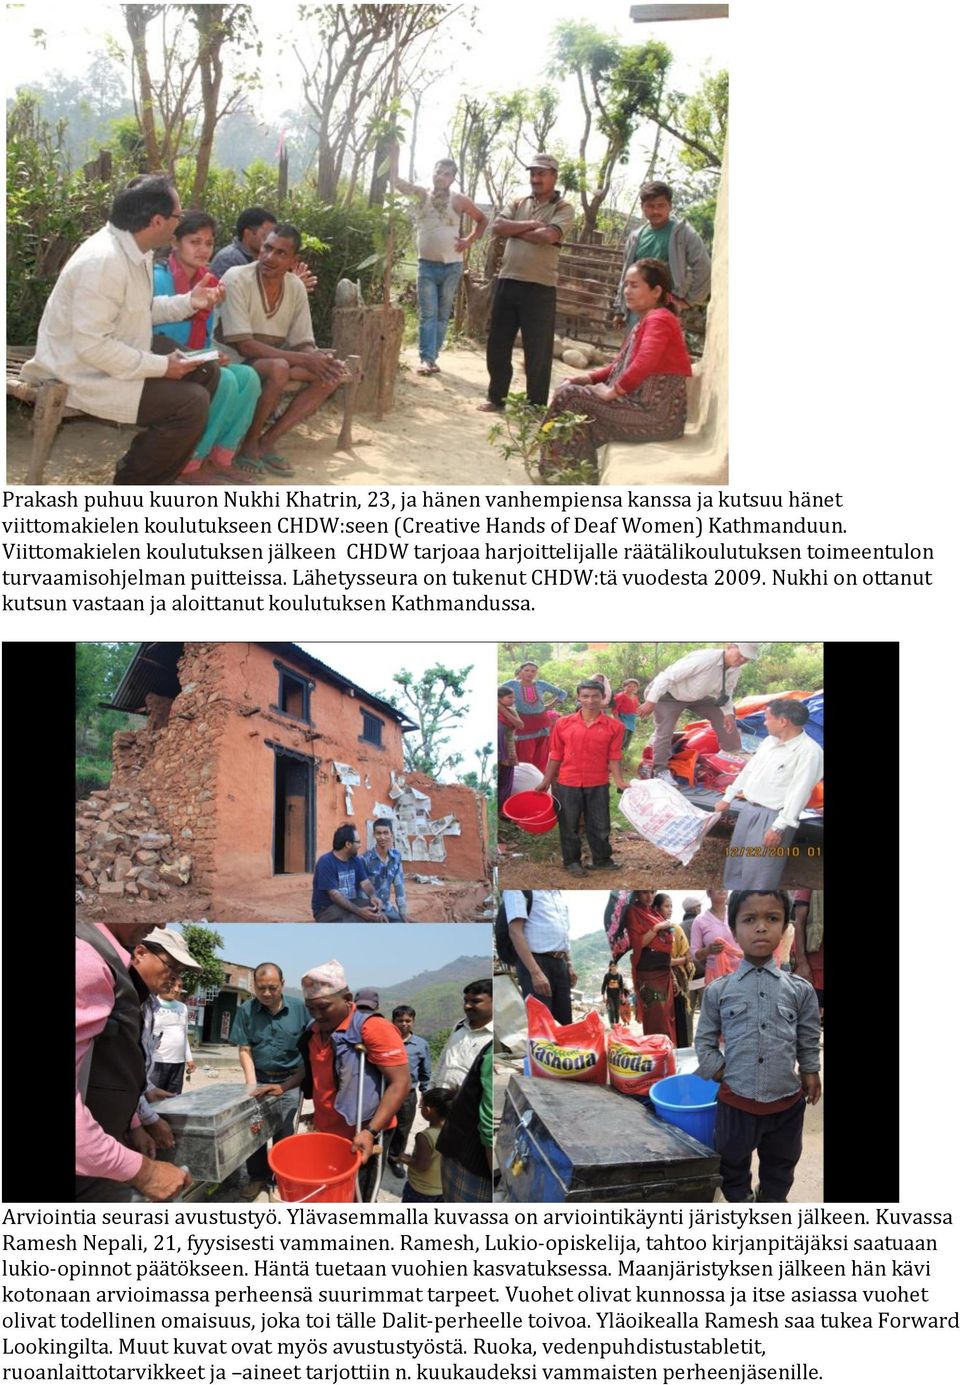 Nukhi on ottanut kutsun vastaan ja aloittanut koulutuksen Kathmandussa. Arviointia seurasi avustustyö. Ylävasemmalla kuvassa on arviointikäynti järistyksen jälkeen.